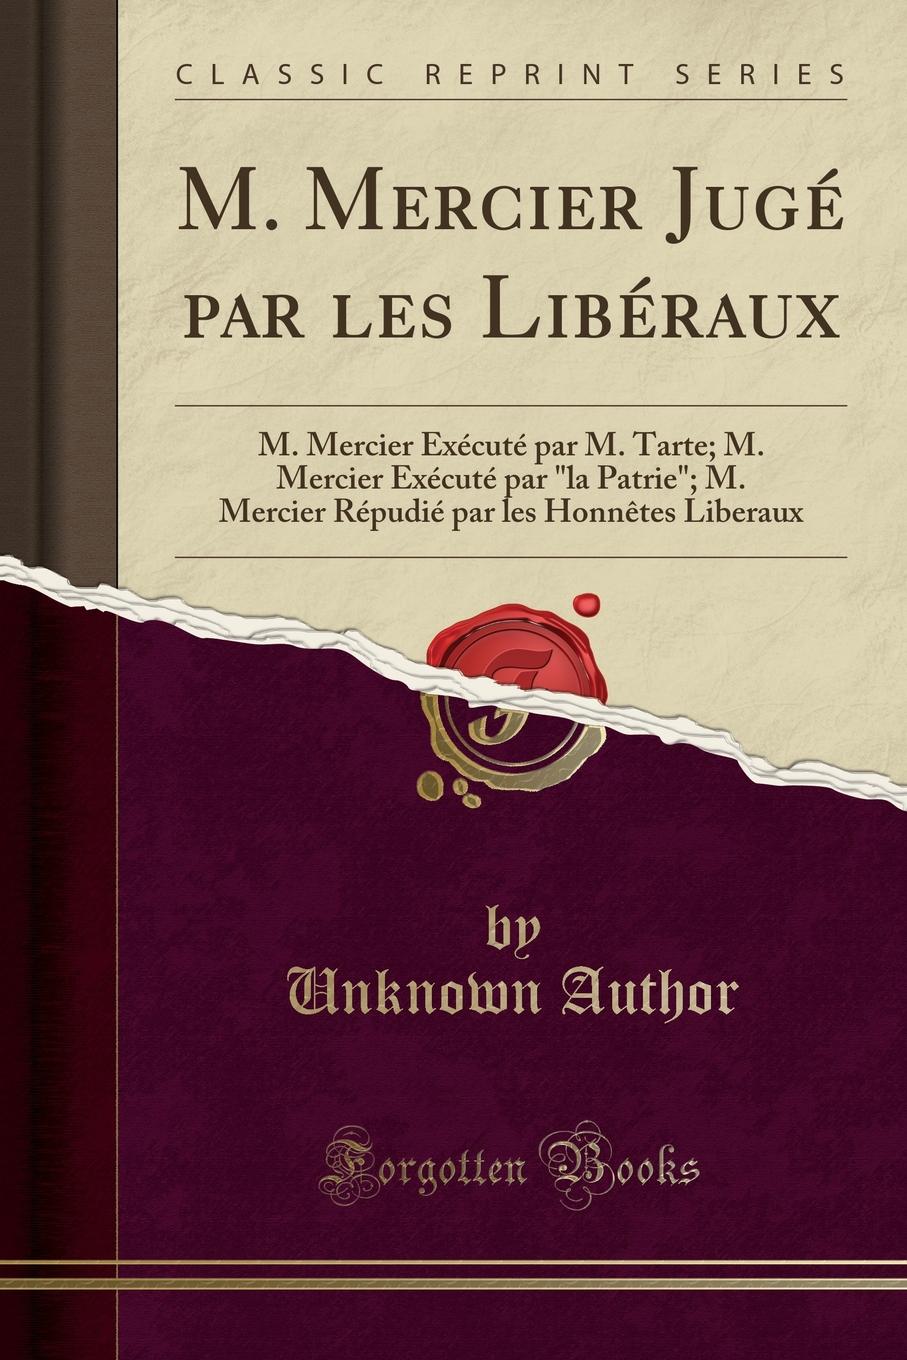 Unknown Author M. Mercier Juge par les Liberaux. M. Mercier Execute par M. Tarte; M. Mercier Execute par 